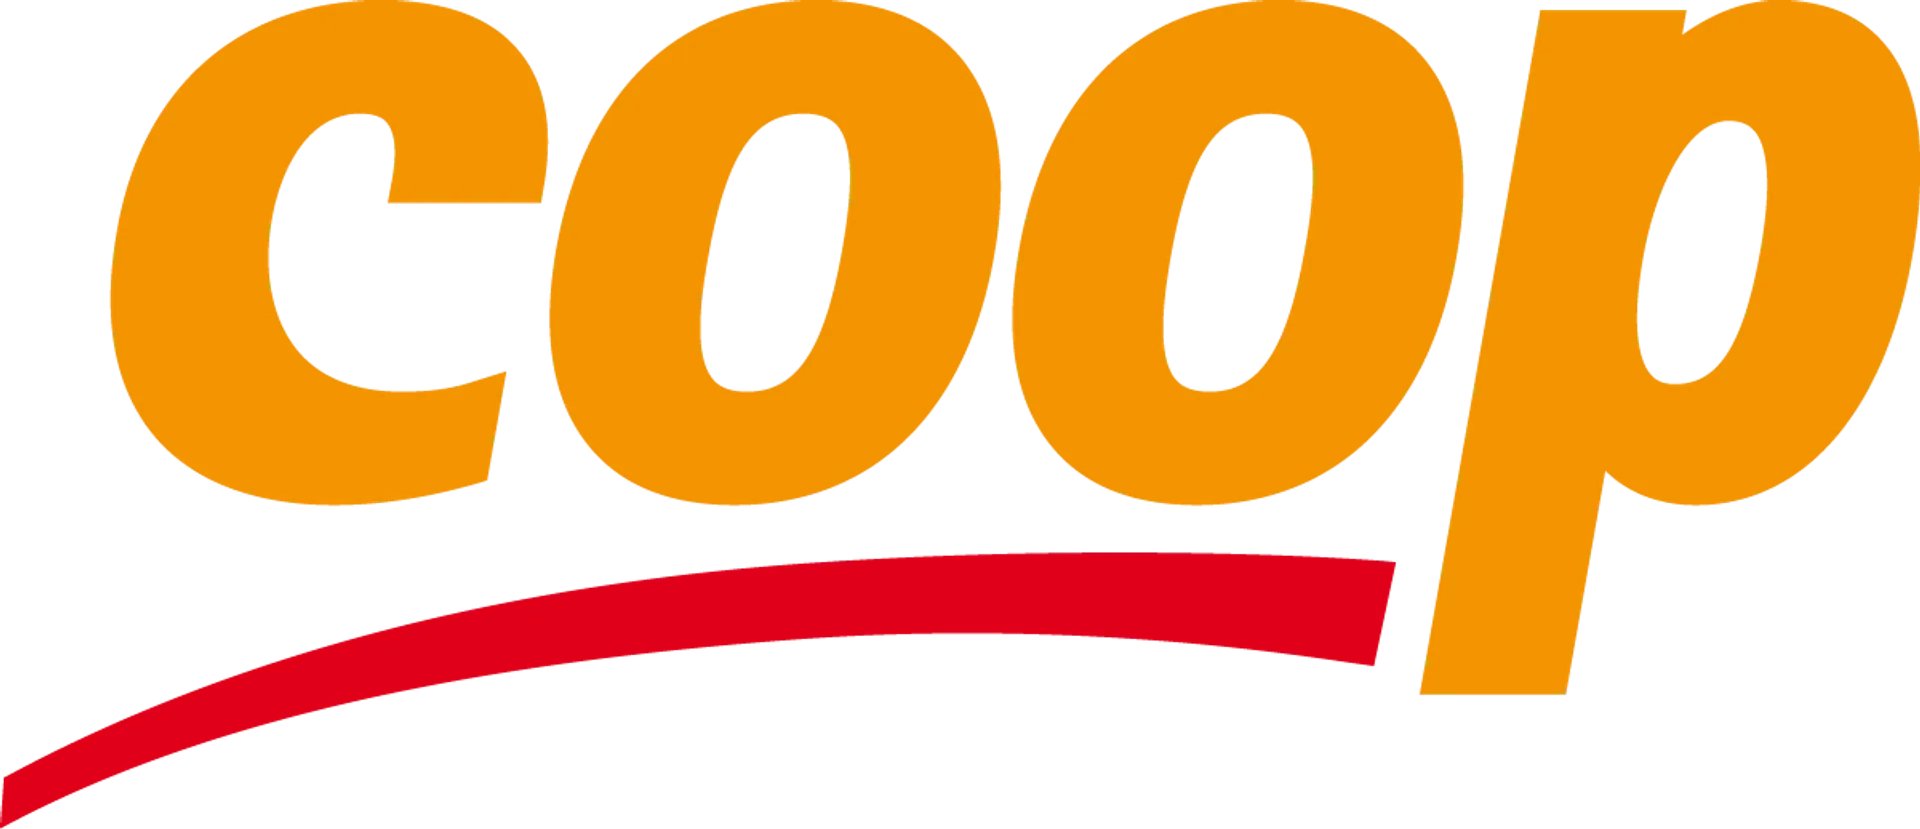 COOP logo in de folder van deze week